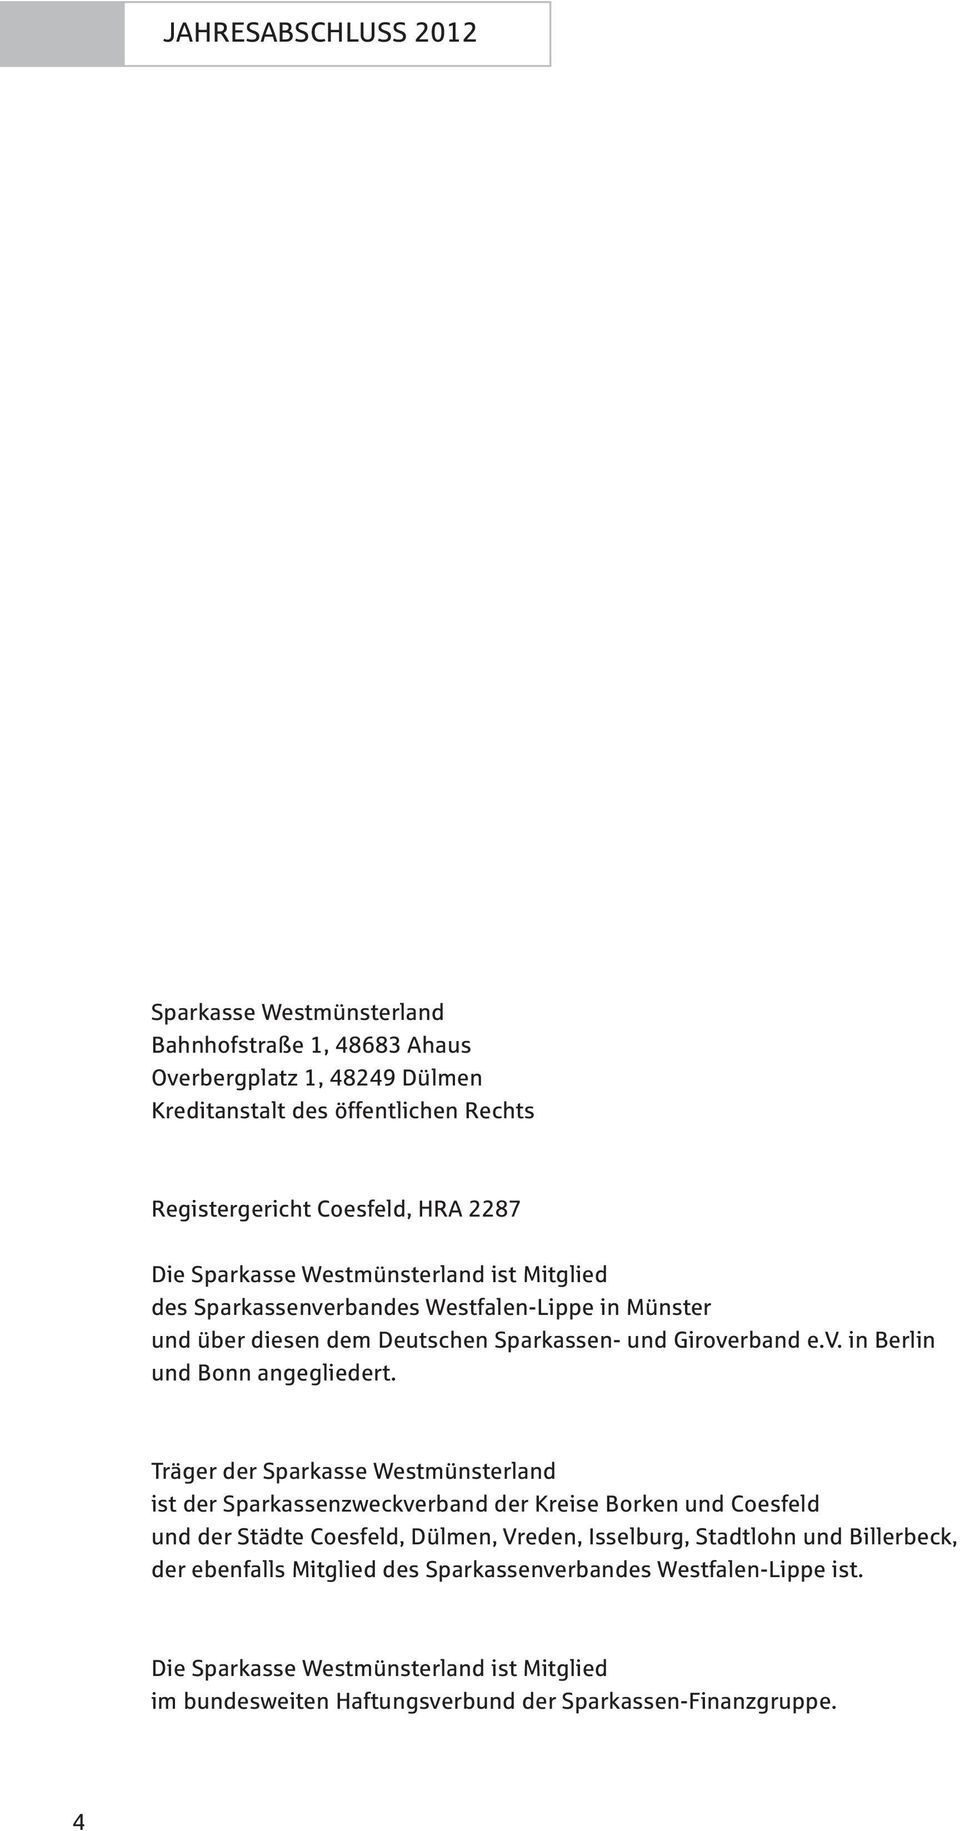 Träger der Sparkasse Westmünsterland ist der Sparkassenzweckverband der Kreise Borken und Coesfeld und der Städte Coesfeld, Dülmen, Vreden, Isselburg, Stadtlohn und Billerbeck,